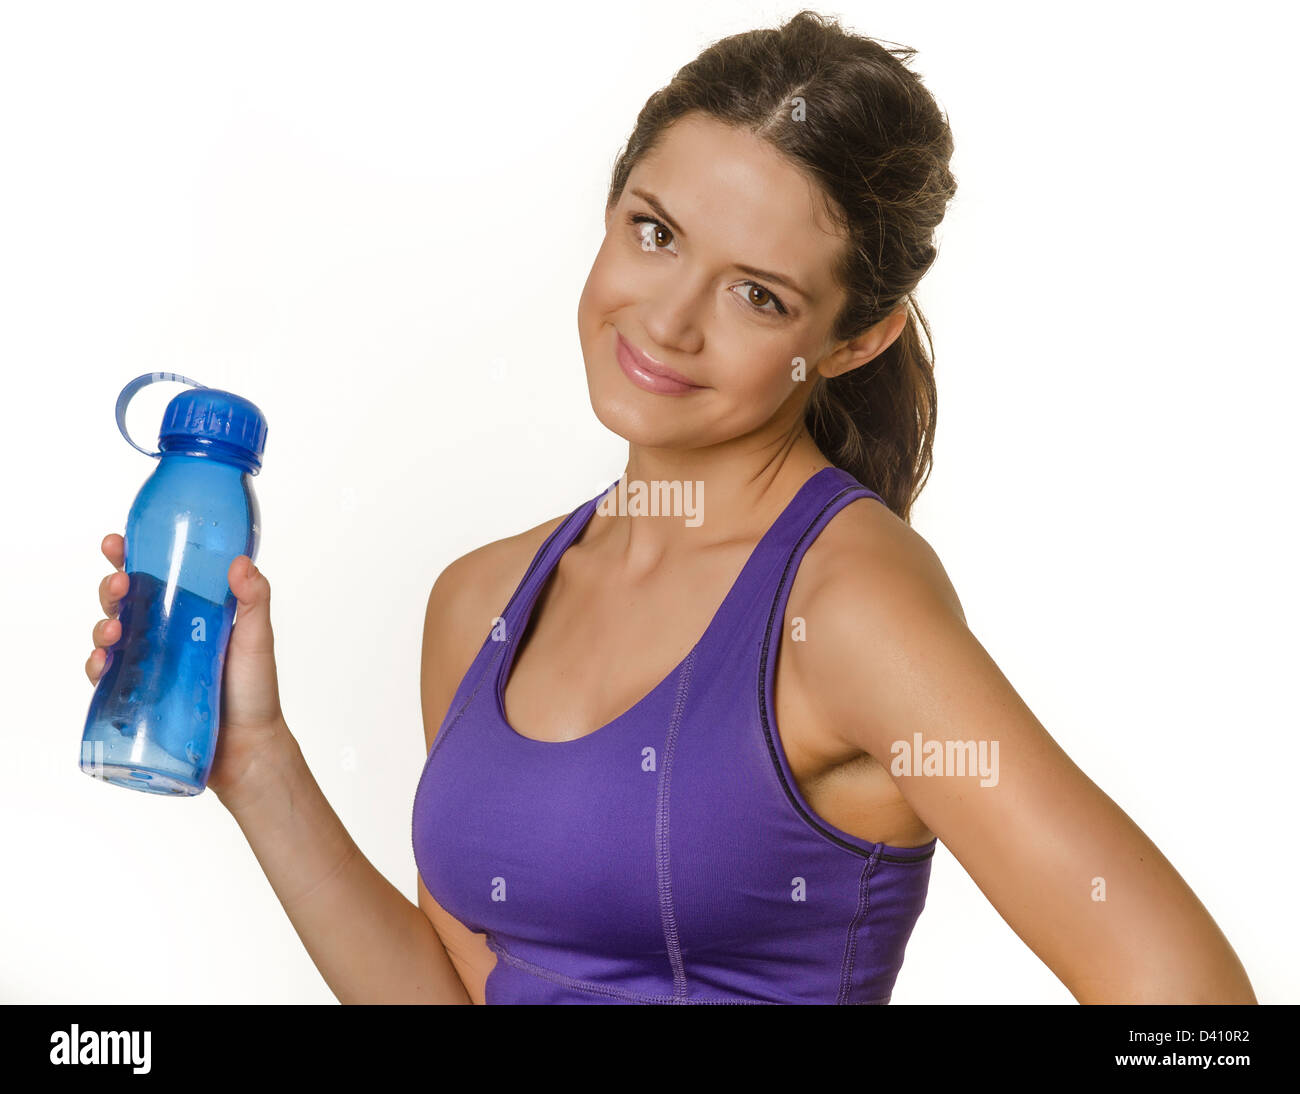 Hübsche junge Frau hält eine Flasche Wasser in Sportkleidung. Isoliert gegen weiß. Stockfoto